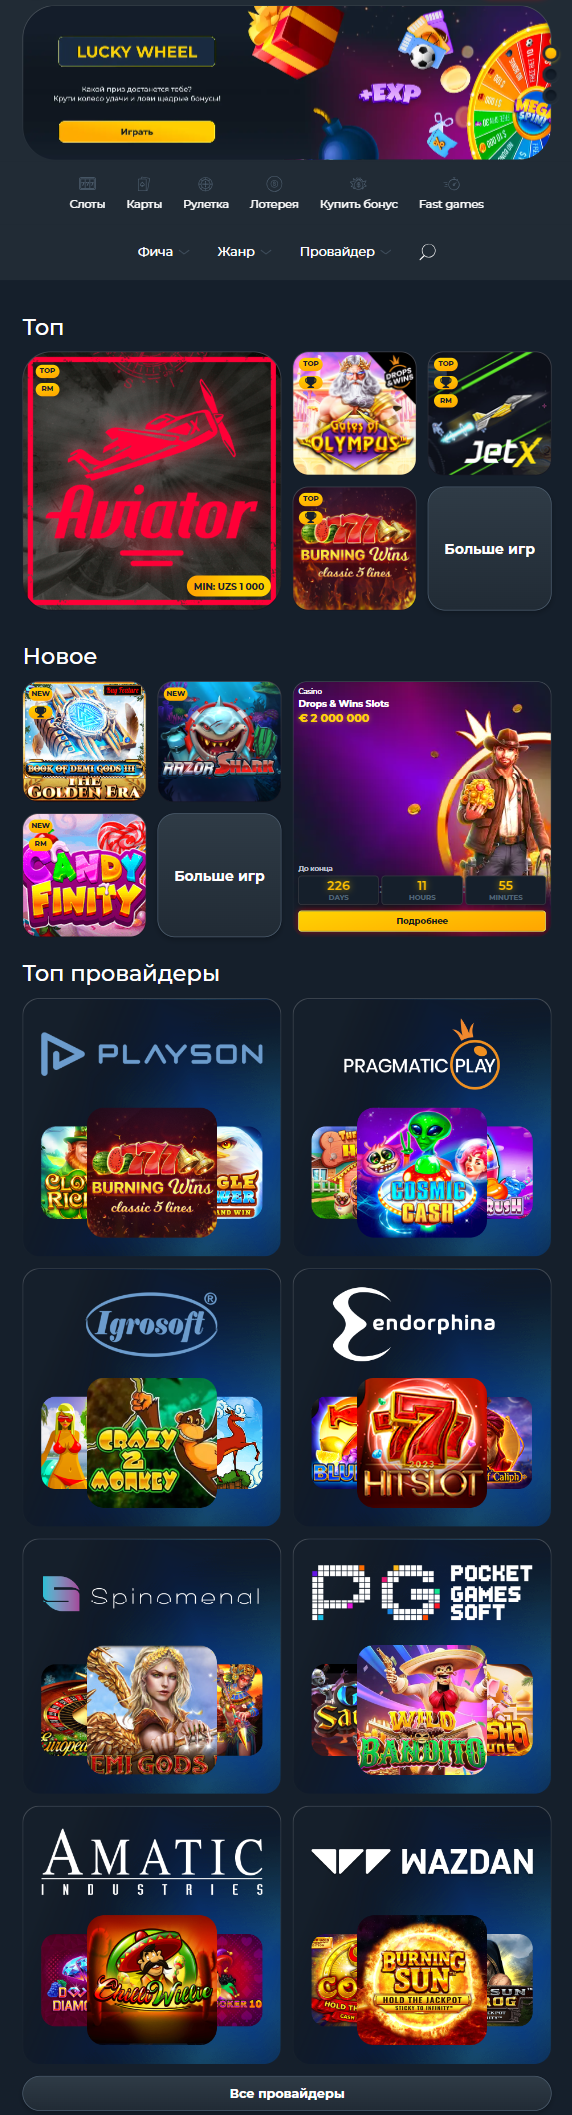 Vivi Casino - Волнующий мир азарта и увлекательных игр